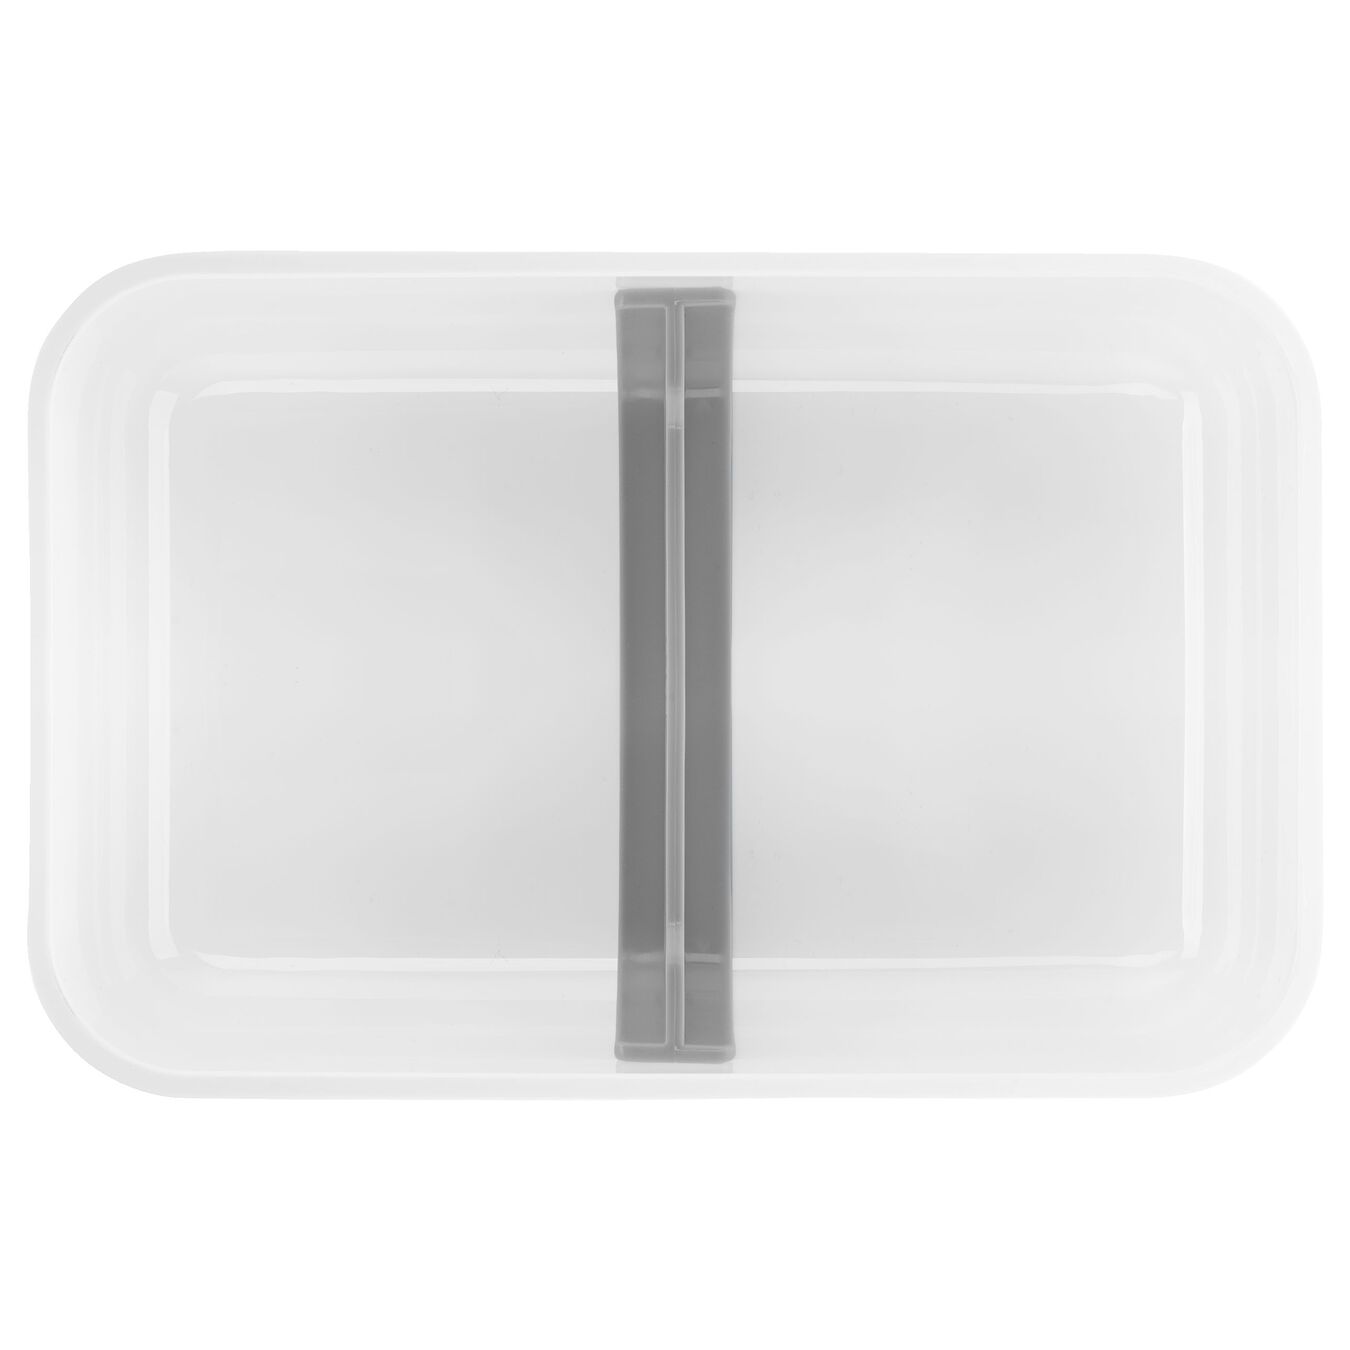 Lunch box sottovuoto L piatto, plastica, bianco-grigio,,large 4